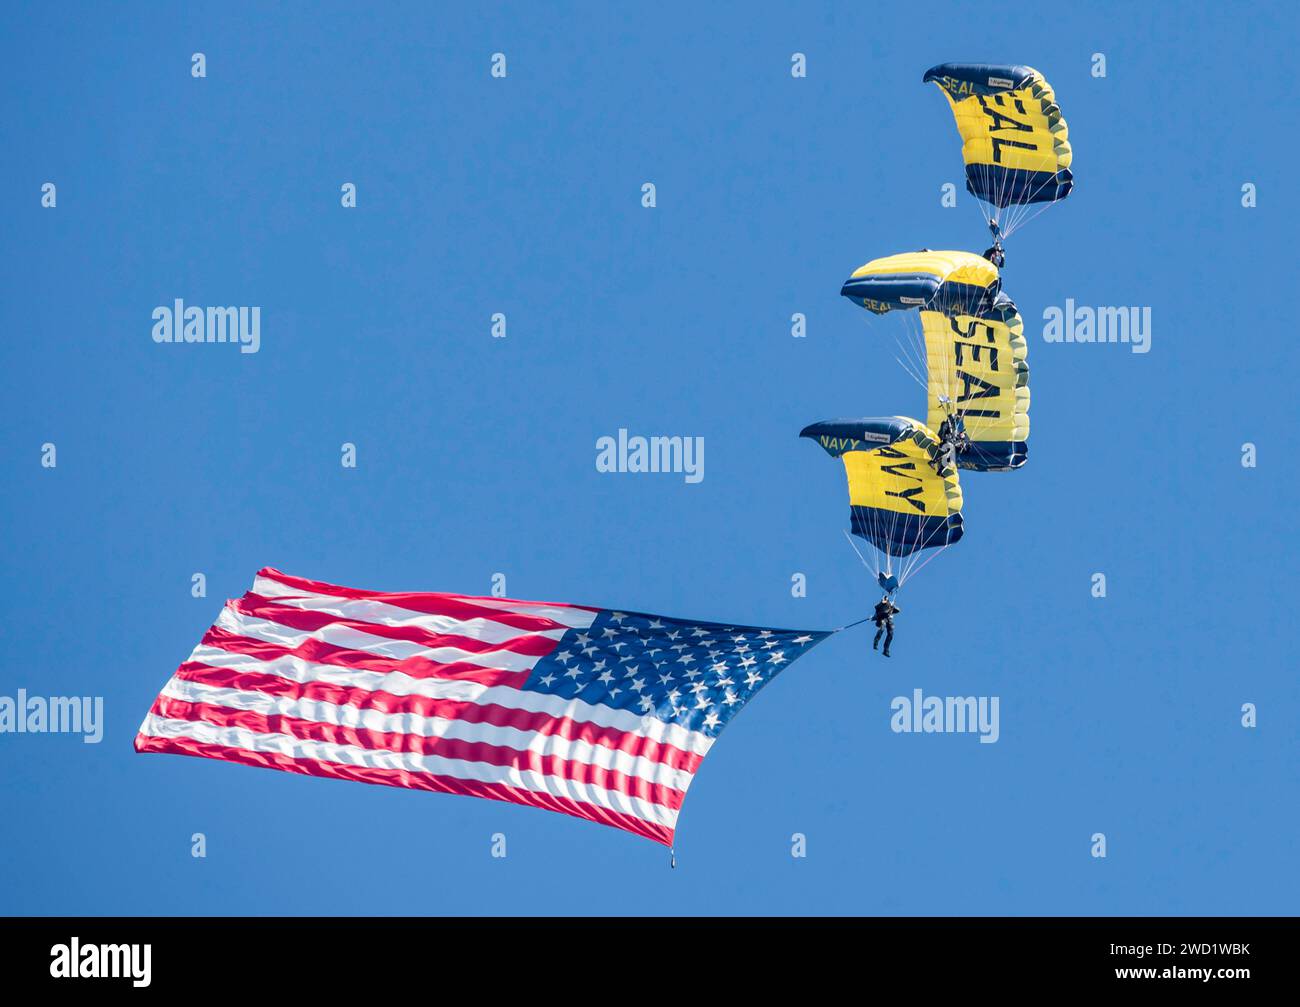 Mitglieder des Fallschirmteams der US Navy, die Leap Frogs, bauen eine Diamantenformation mit amerikanischer Flagge. Stockfoto